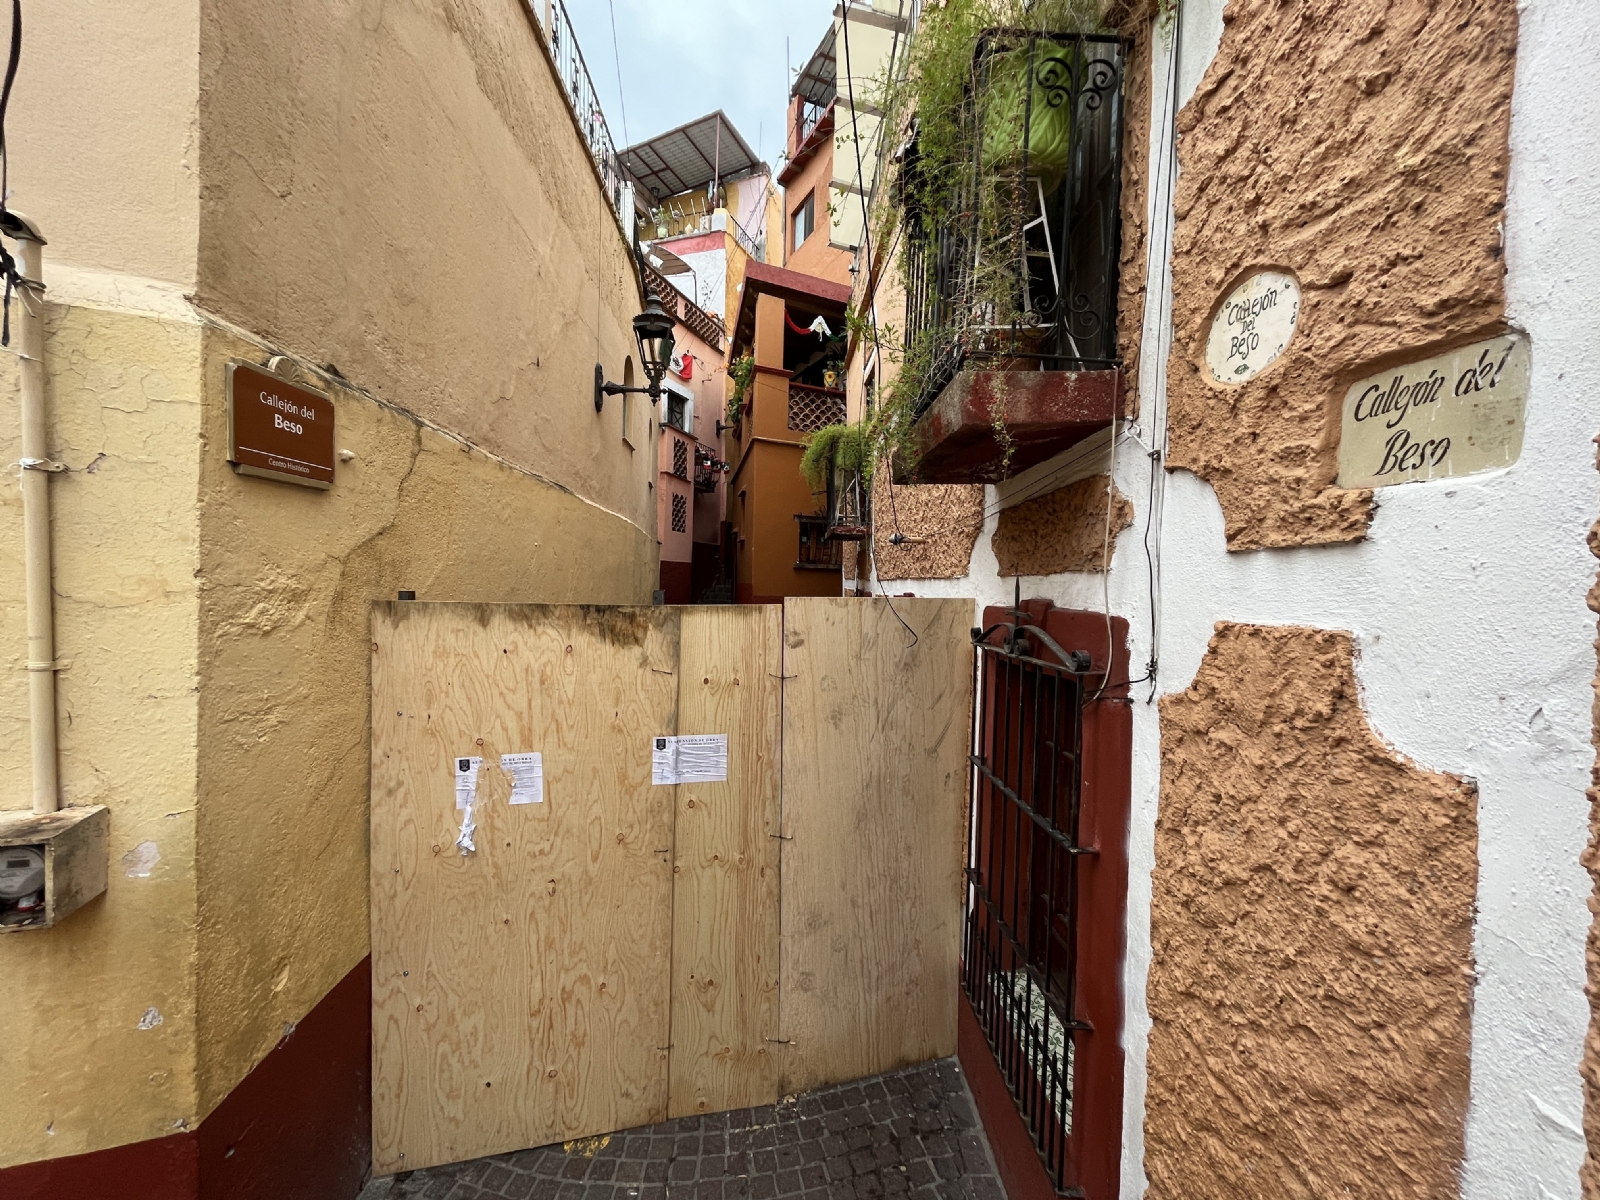 Clausuran el Callejón del Beso en Guanajuato como presunta medida de seguridad